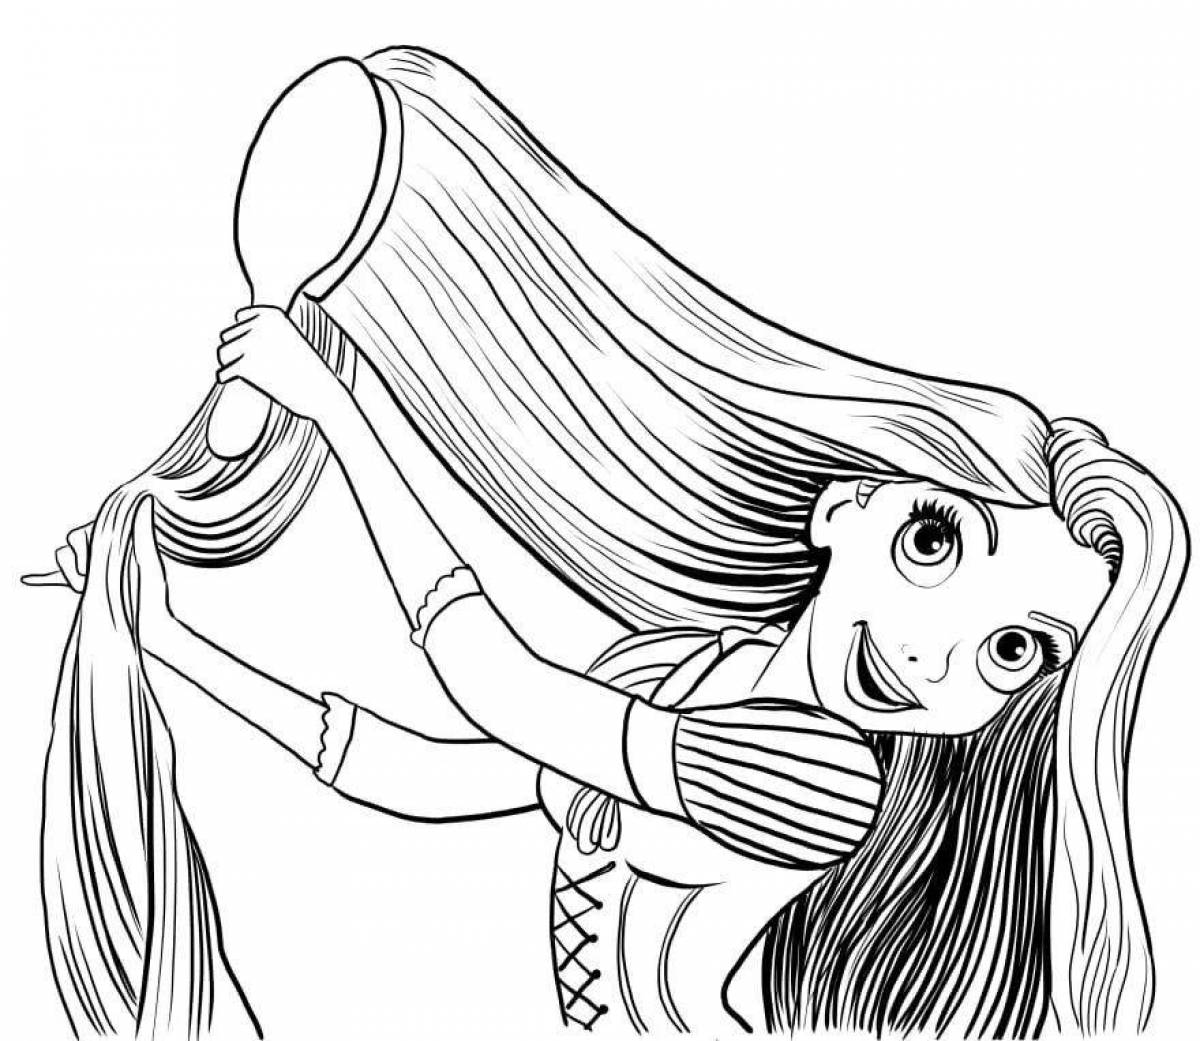 Увлекательная раскраска девочки с длинными волосами